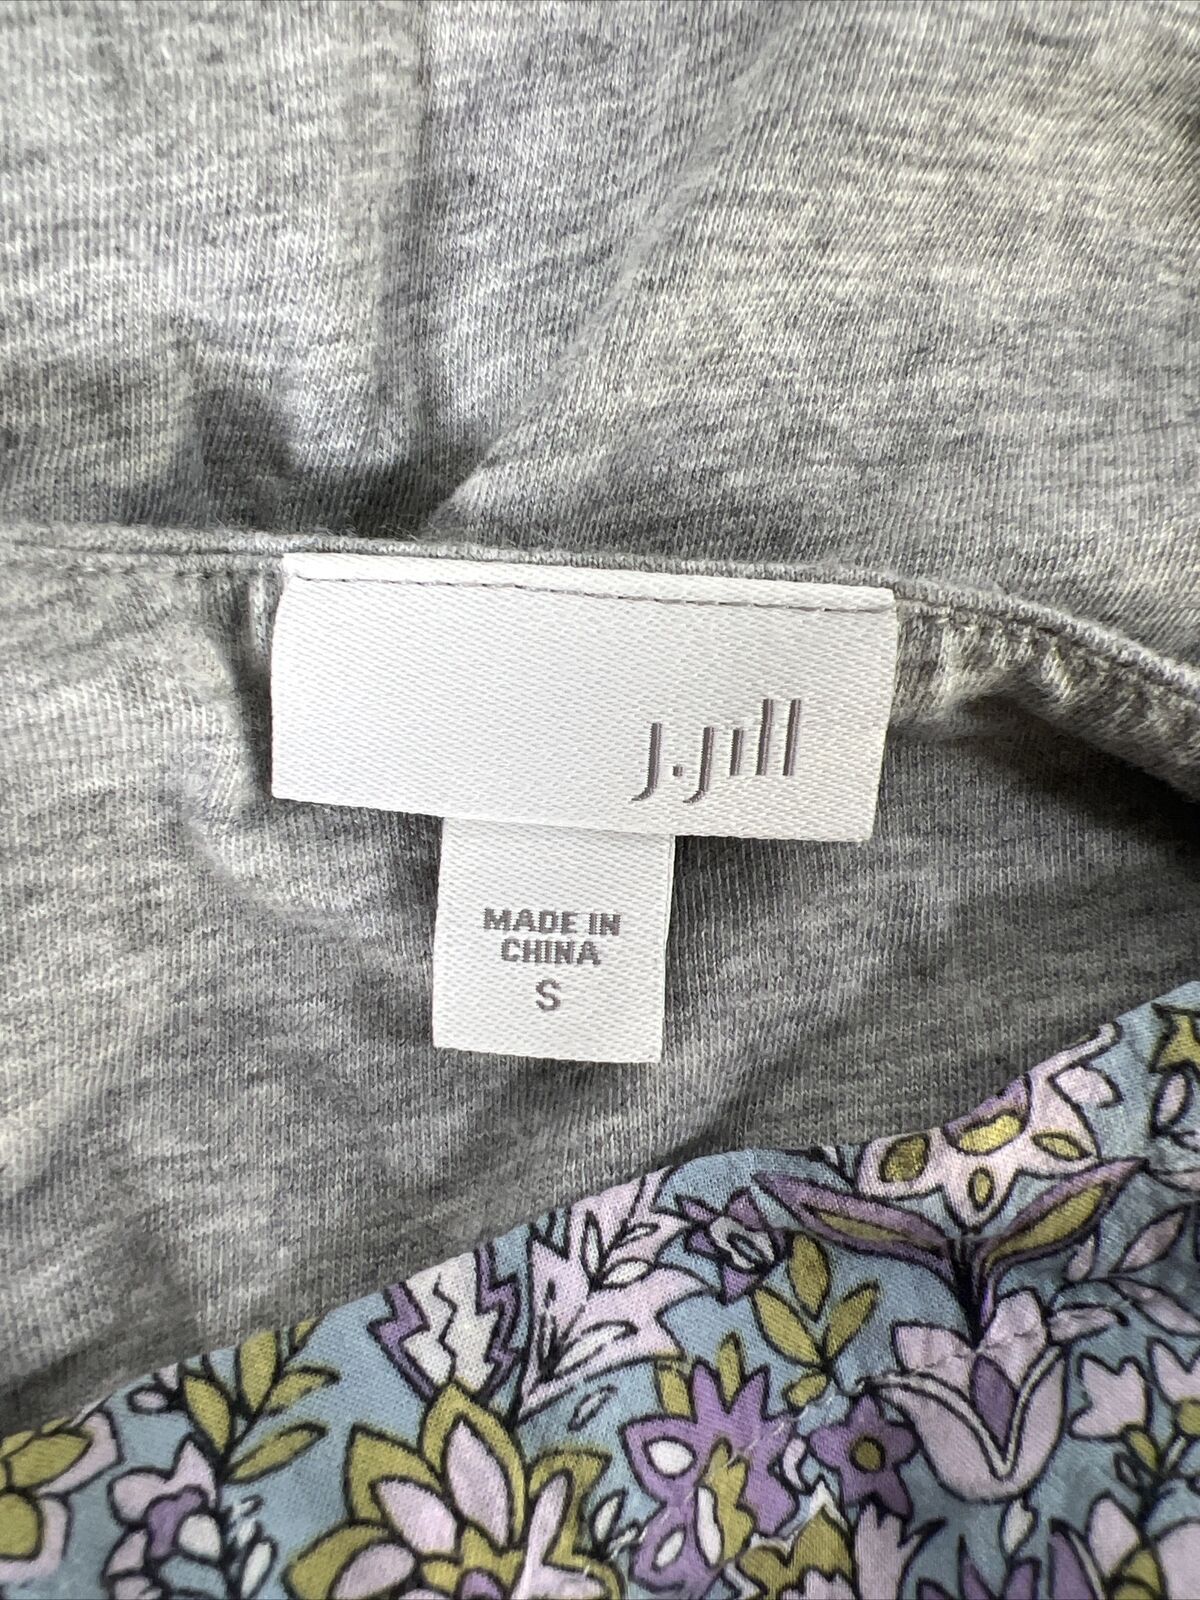 J. Jill Women's Gray/Purple Floral 3/4 Sleeve Top Shirt - S